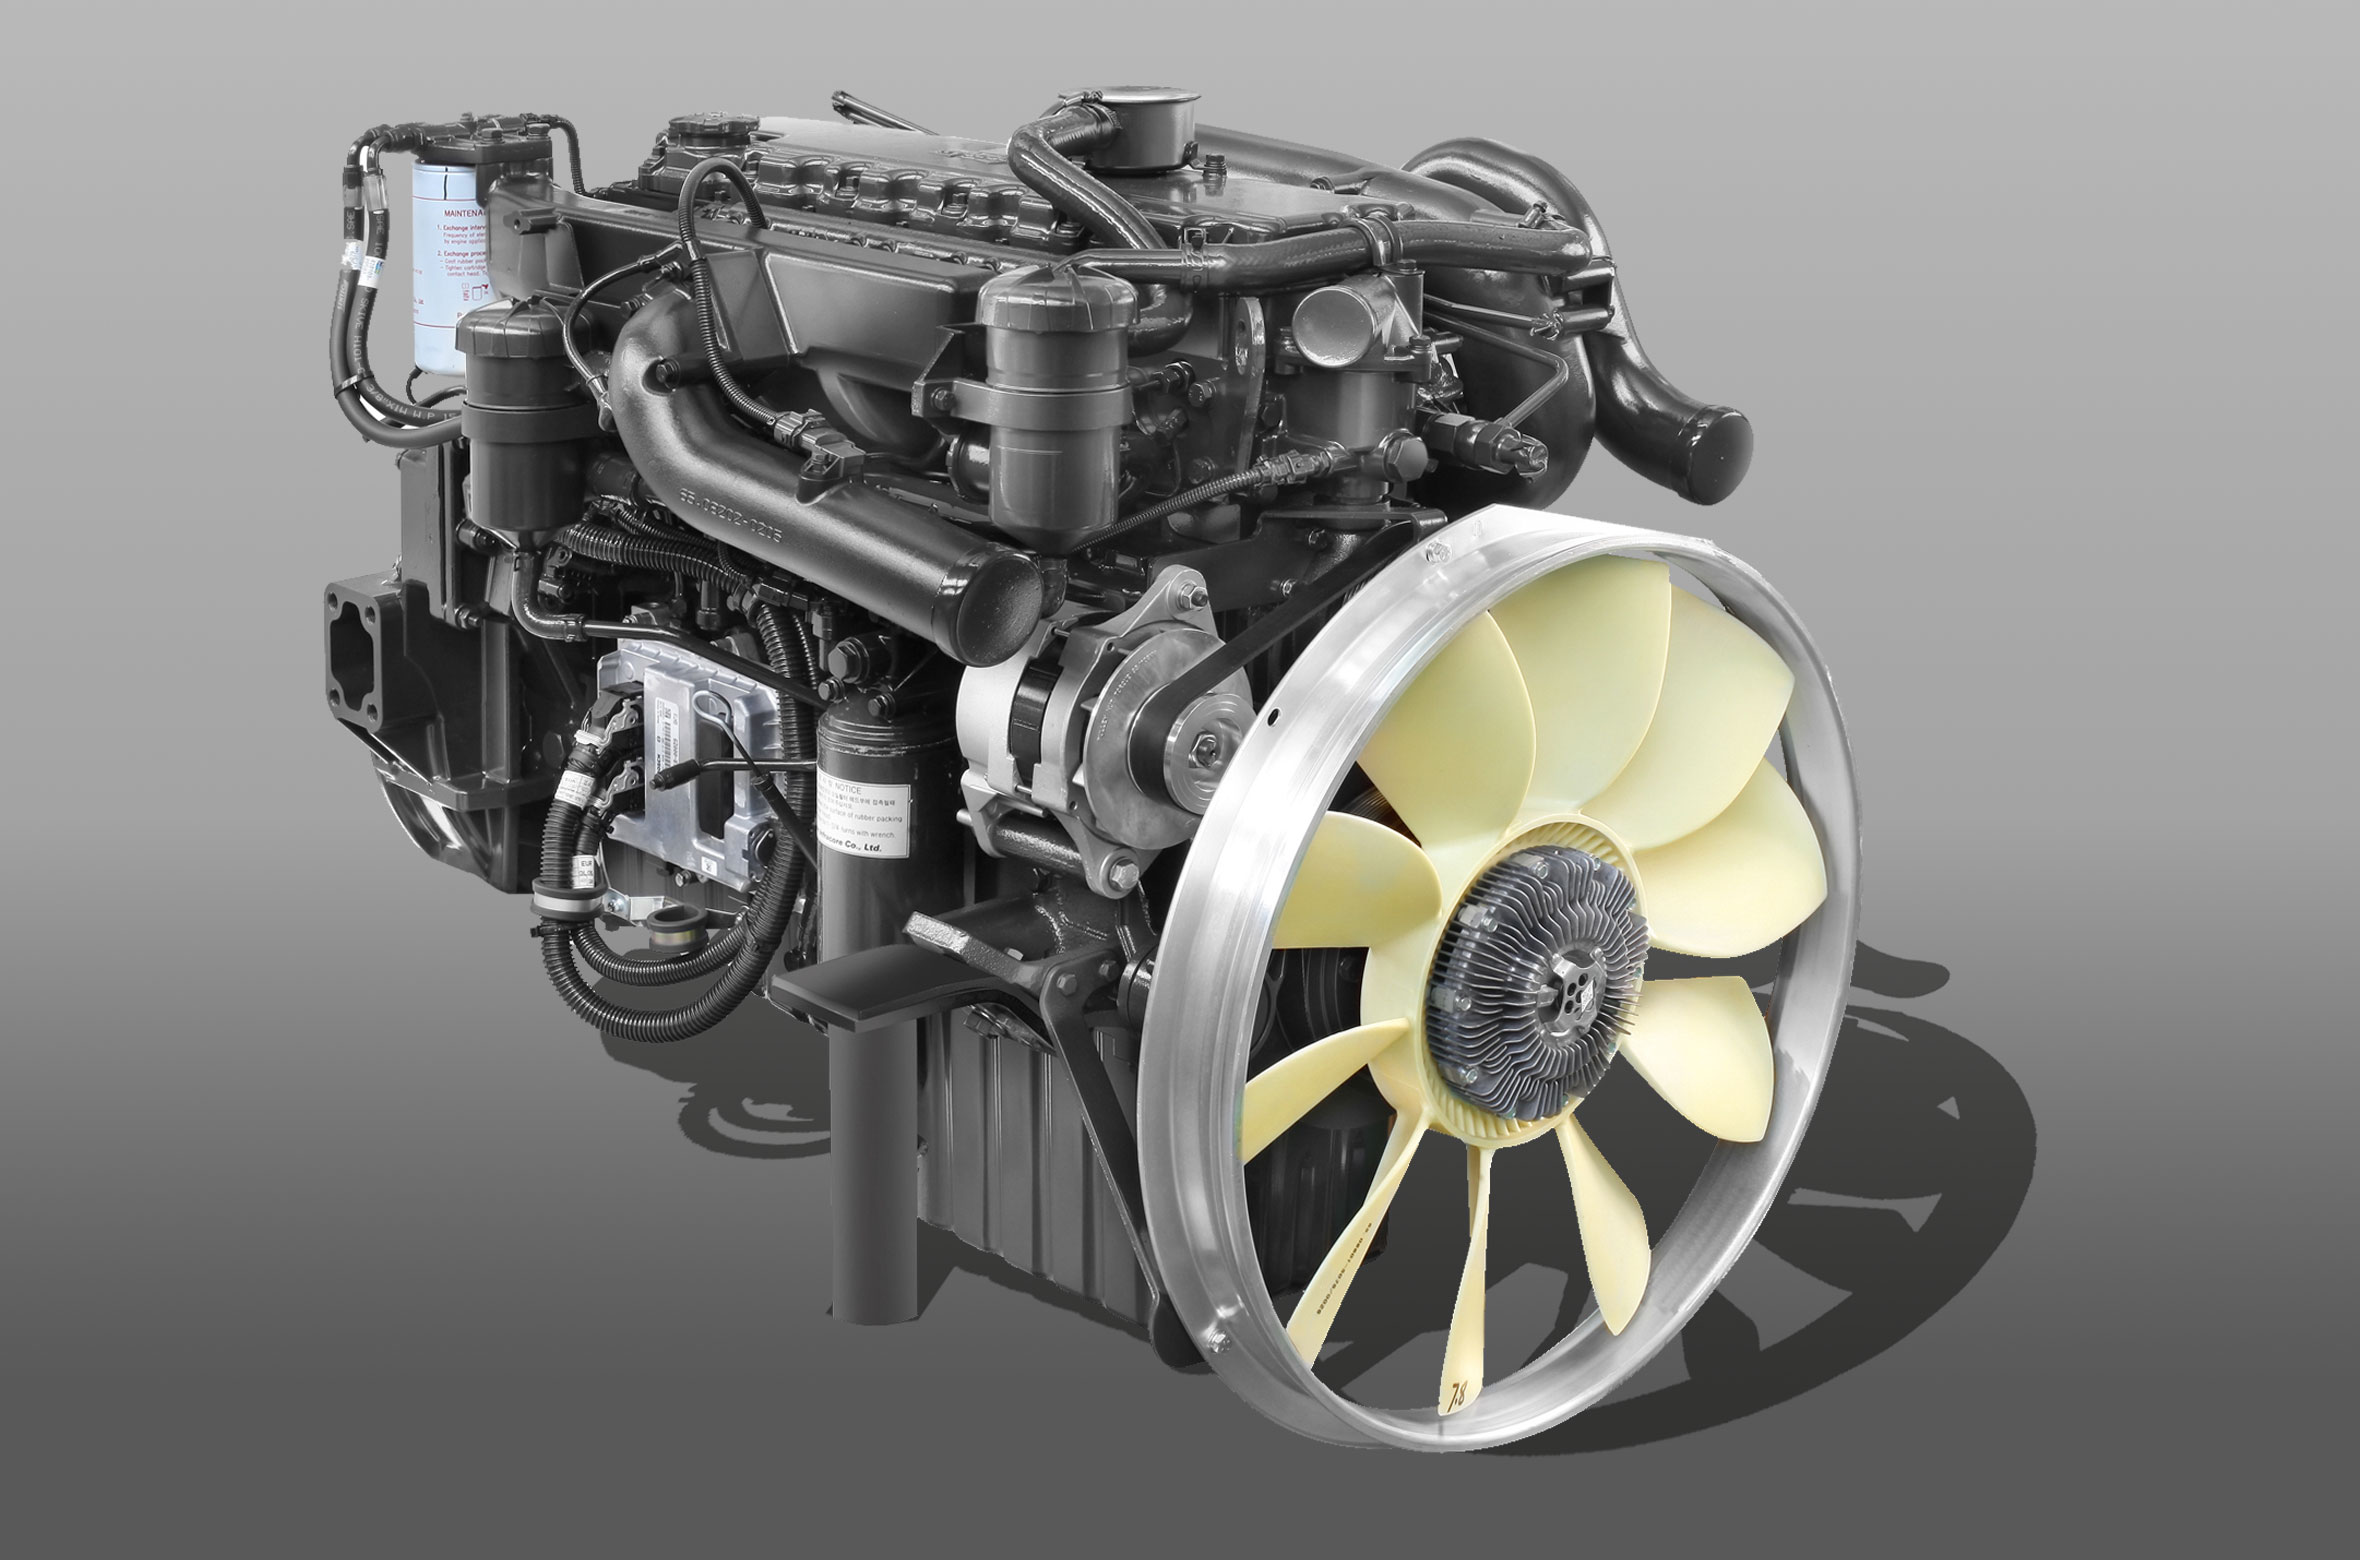 Động cơ Doosan DL06K, Công suất cực đại: 280 PS/2.500 rpm, Momen xoắn cực đại: 981N.m/1.400rpm, Dung tích xilanh: 5.890cc